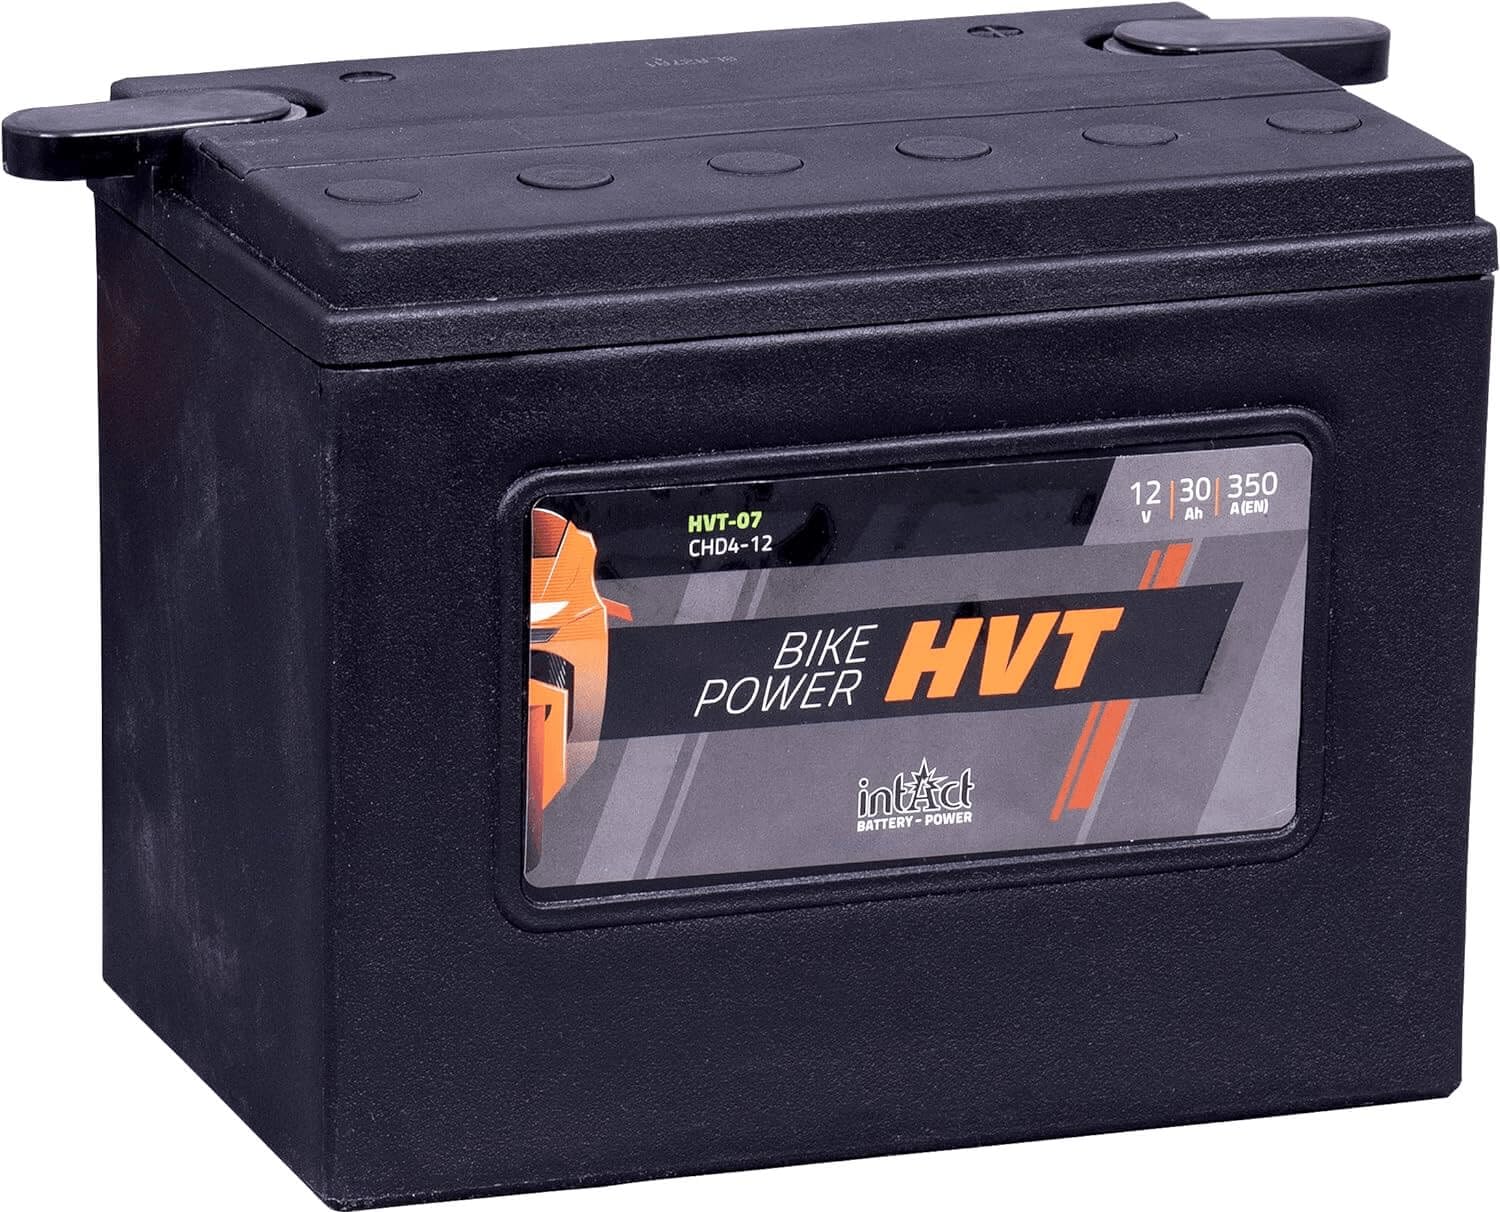 intAct - HVT MOTORRADBATTERIE | Batterie für Roller, Motorrad, Rasentraktor. Wartungsfreier & auslaufsicherer Akku. | HVT-07, CHD4-12, 66007-84, 12V Batterie, 30 AH (c20), 350 A (EN) | Maße: 205x130x165mm von Intact